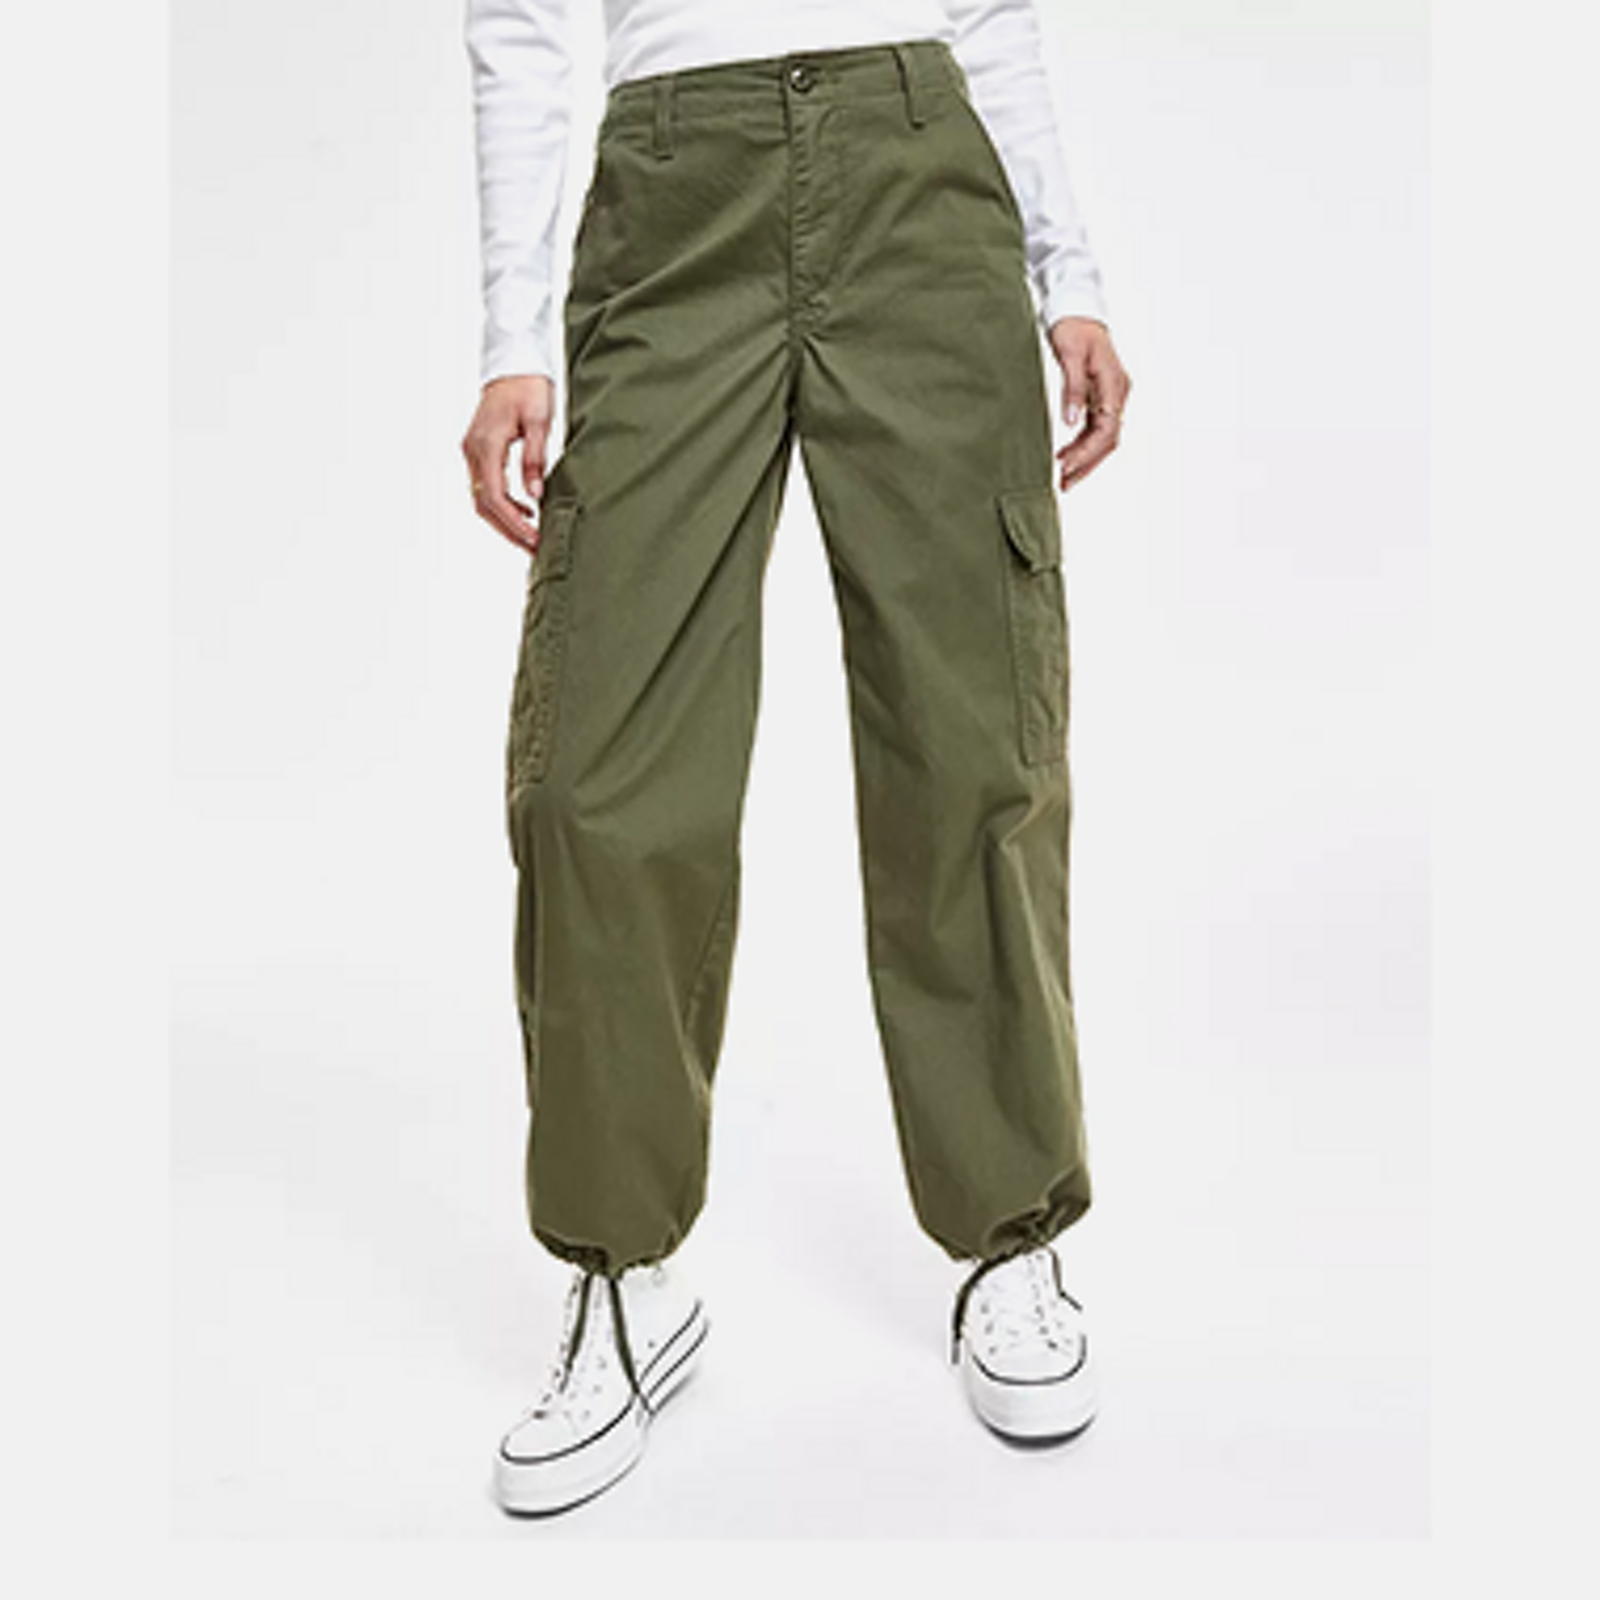 Kasper Pants for Women - Macy's